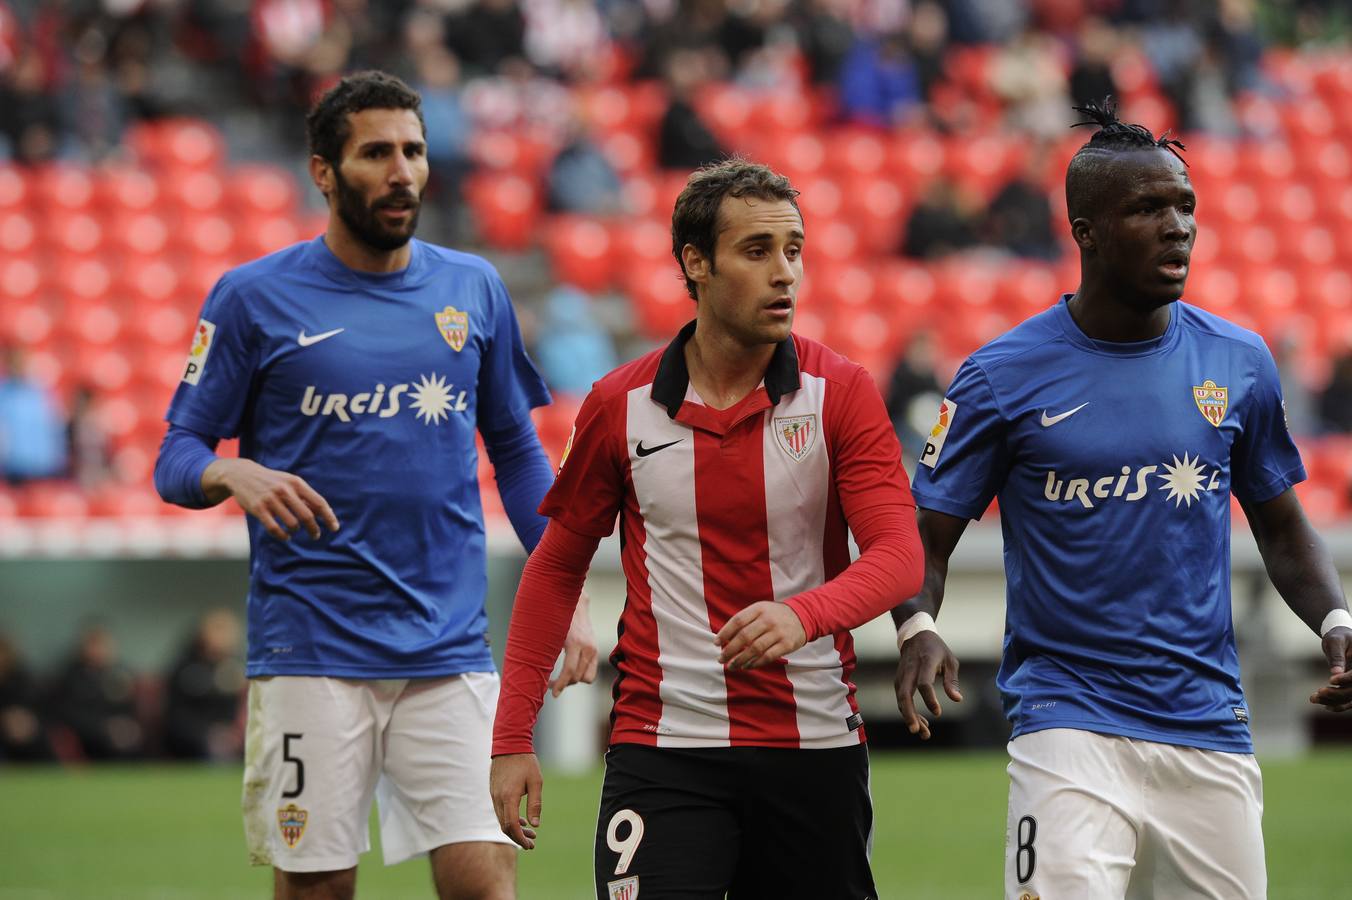 El Bilbao Athletic-Almería, en imágenes